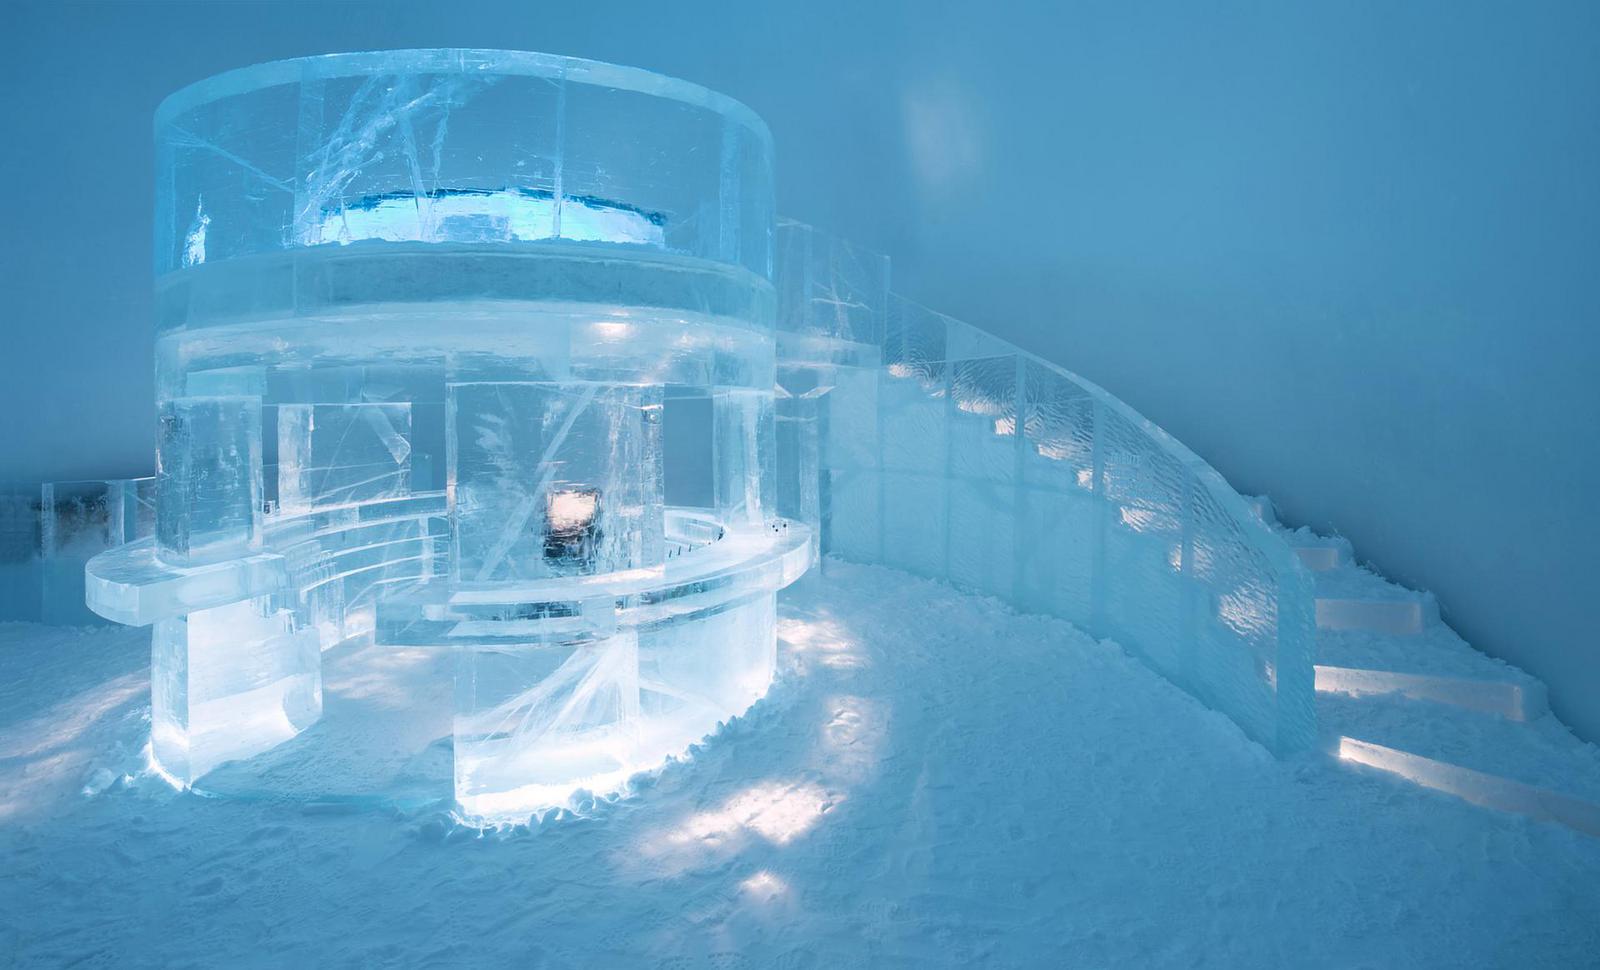 The IceBar Jukkasjärvi design is called "Tribute"